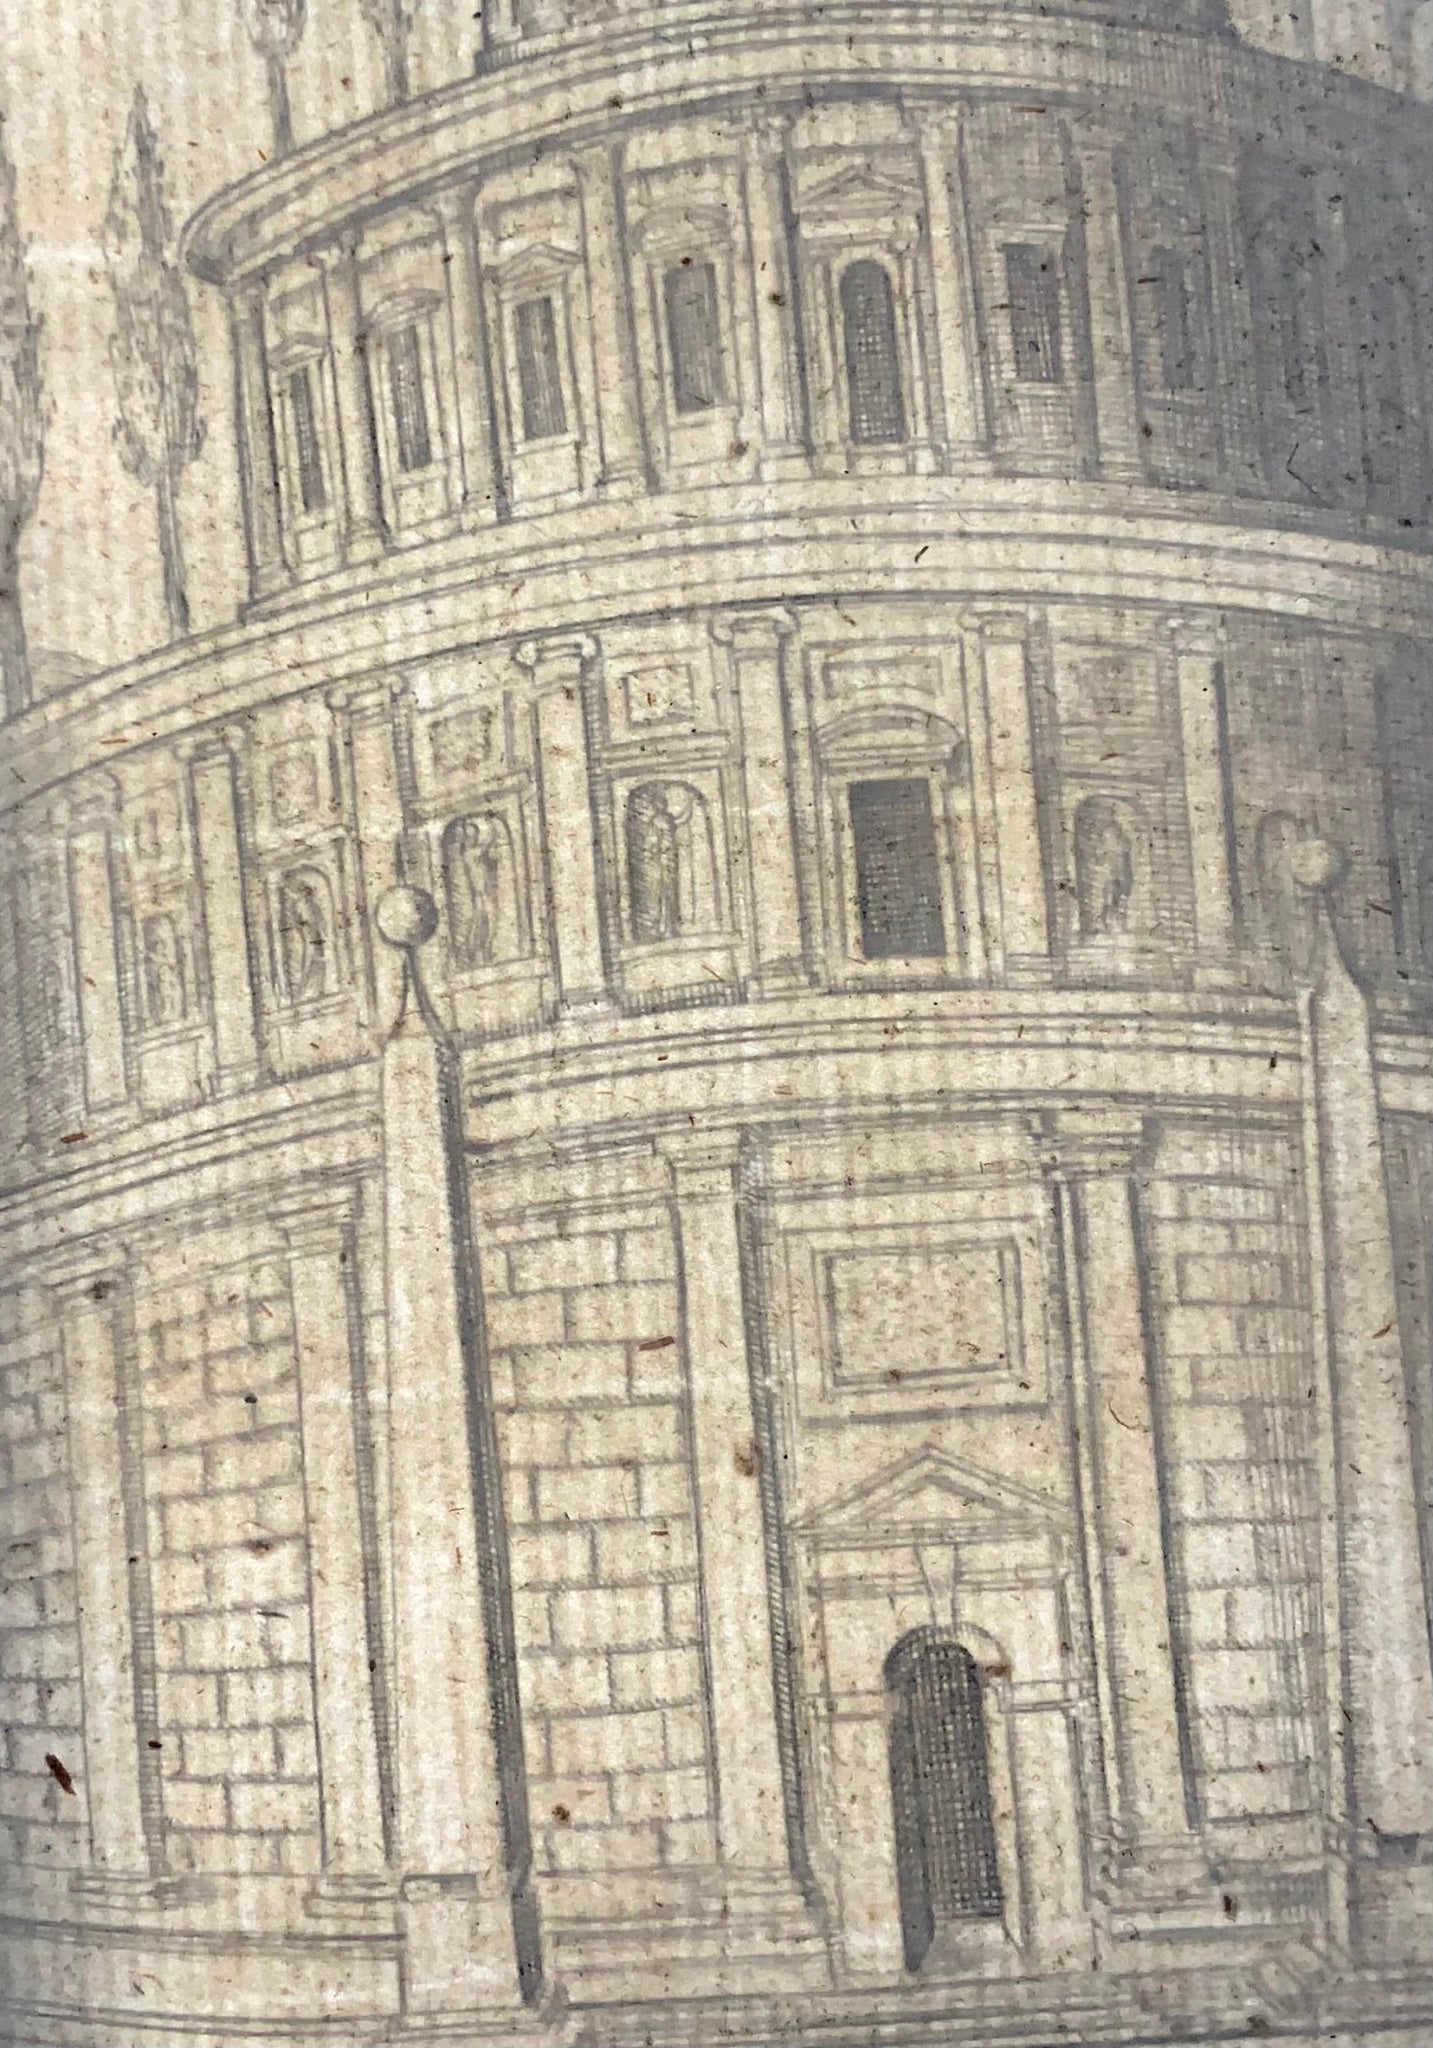 1624 Lauro, Giacomo, Mausoleo di Augusto, folio, incisione su rame, Roma, Italia, architettura classica